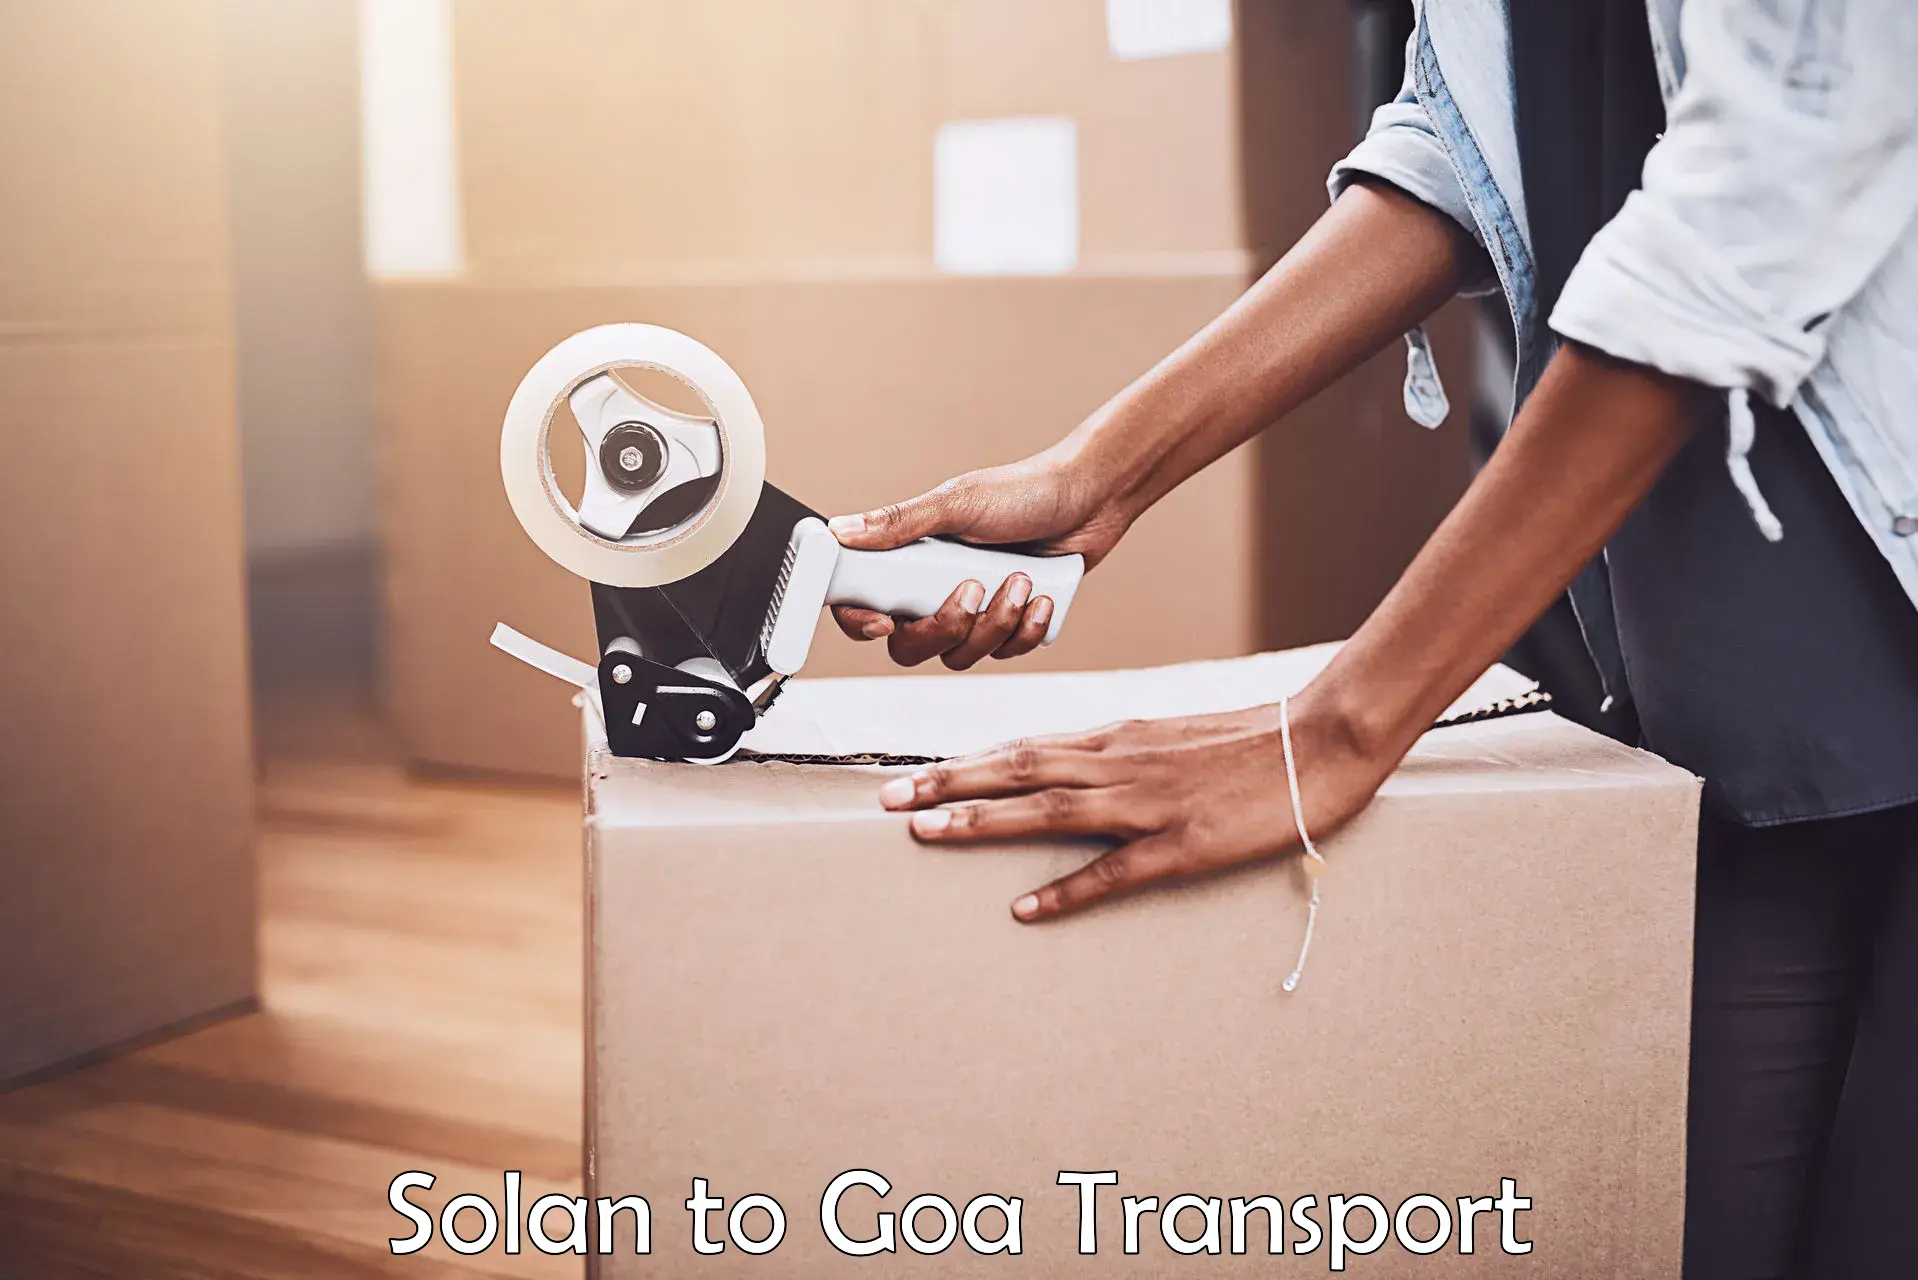 Two wheeler transport services Solan to Goa University